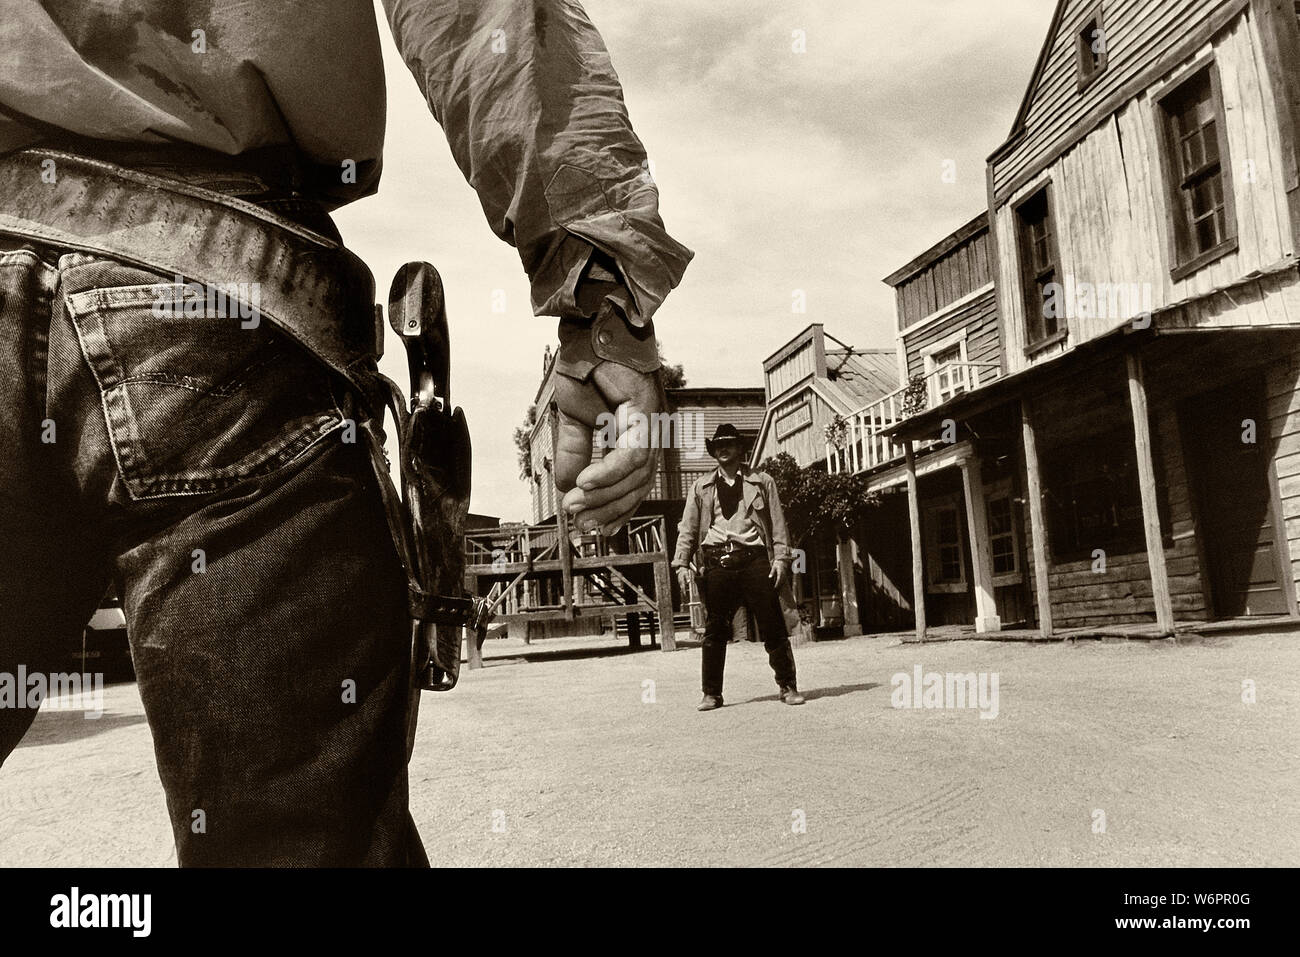 Fusillade Cowboy à fort Bravo / Texas Hollywood, Almeria, Espagne Banque D'Images